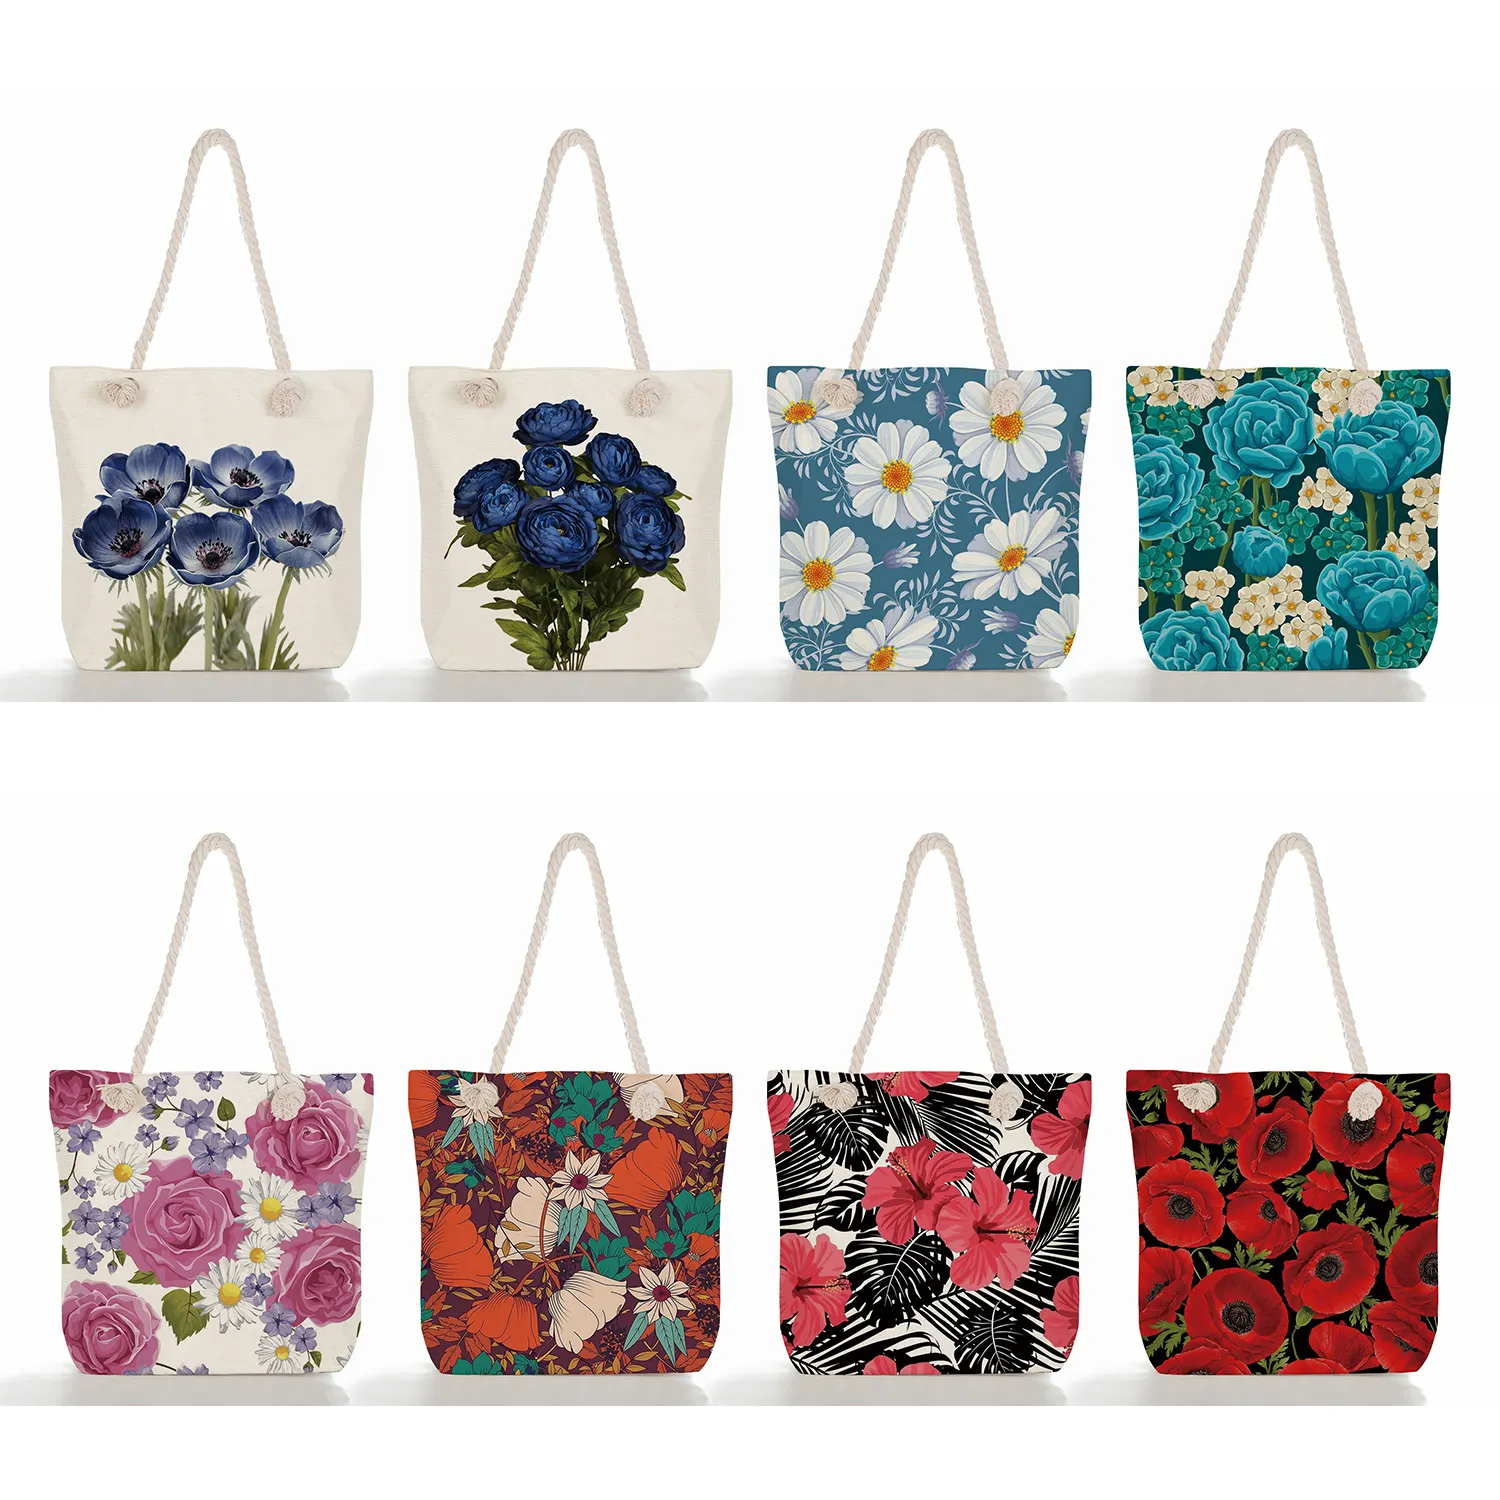 Bolso con estampado de flores coloridas para mujer, bolsa de mano femenina con bonito patrón de plantas, de hombro, reutilizable, venta al por mayor, barata